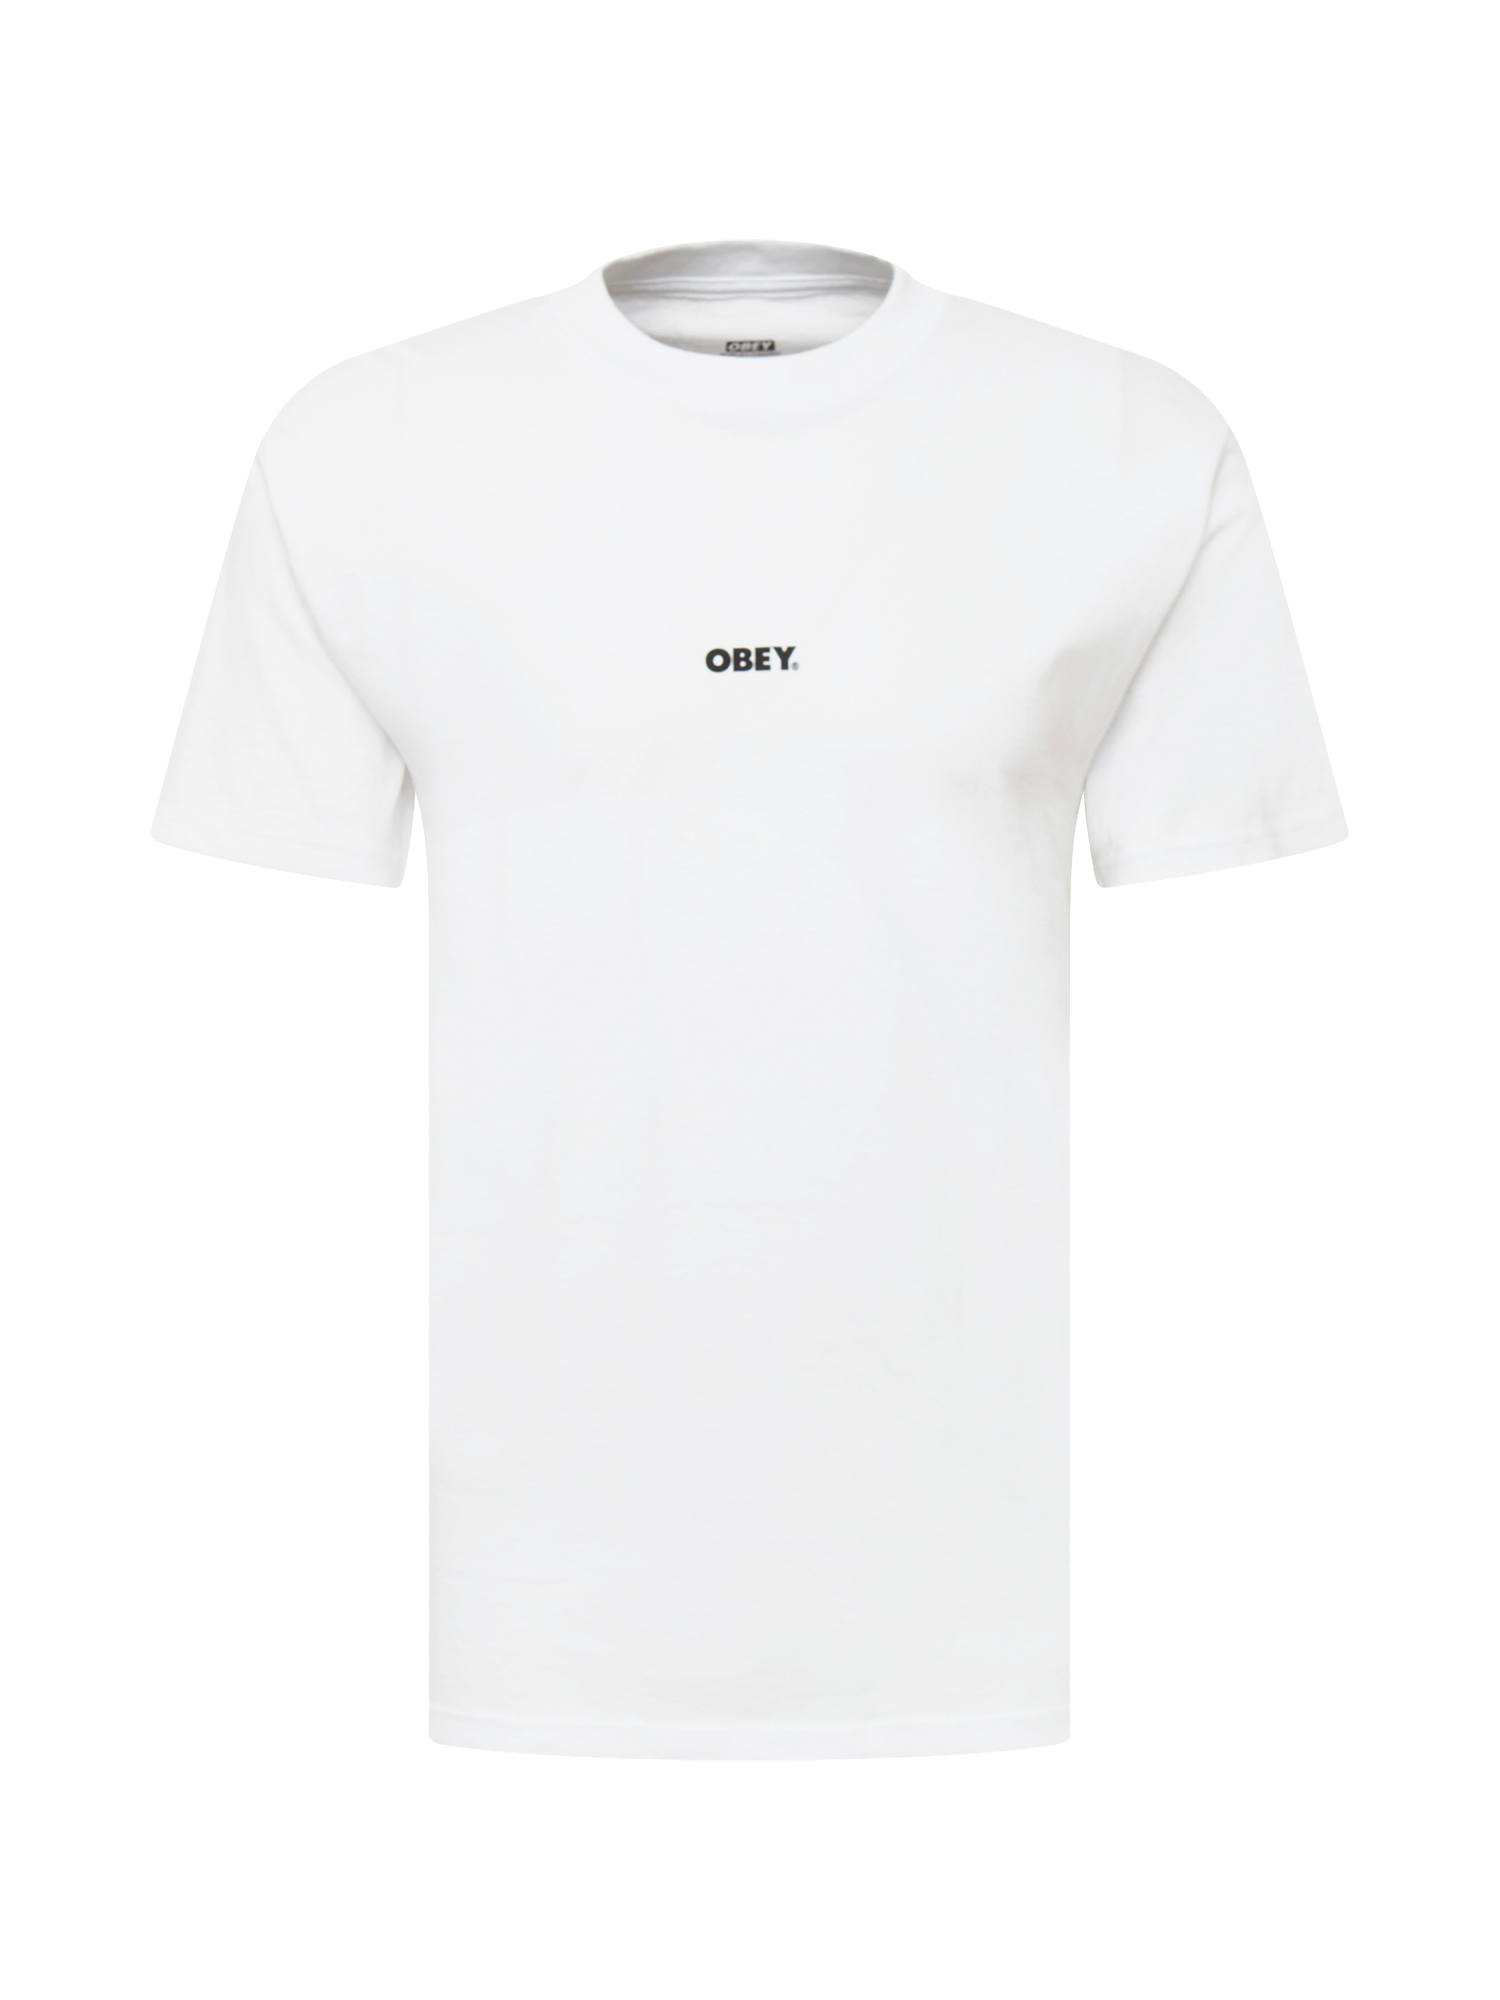 TkTNf Odzież Obey Koszulka w kolorze Białym 